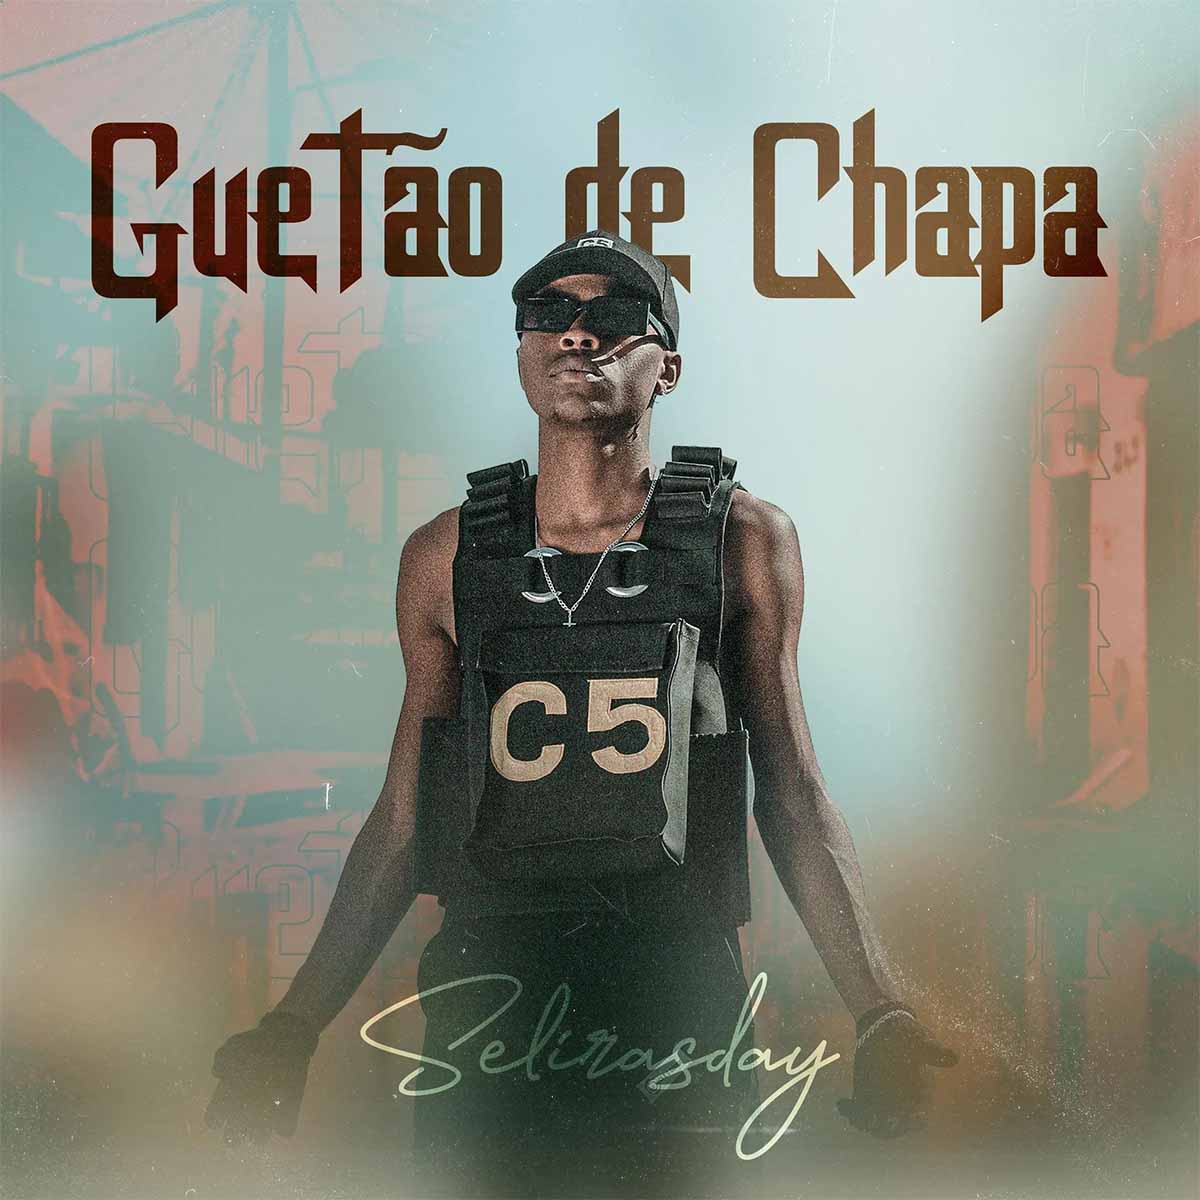 Selirasday – Guetao de Chapa